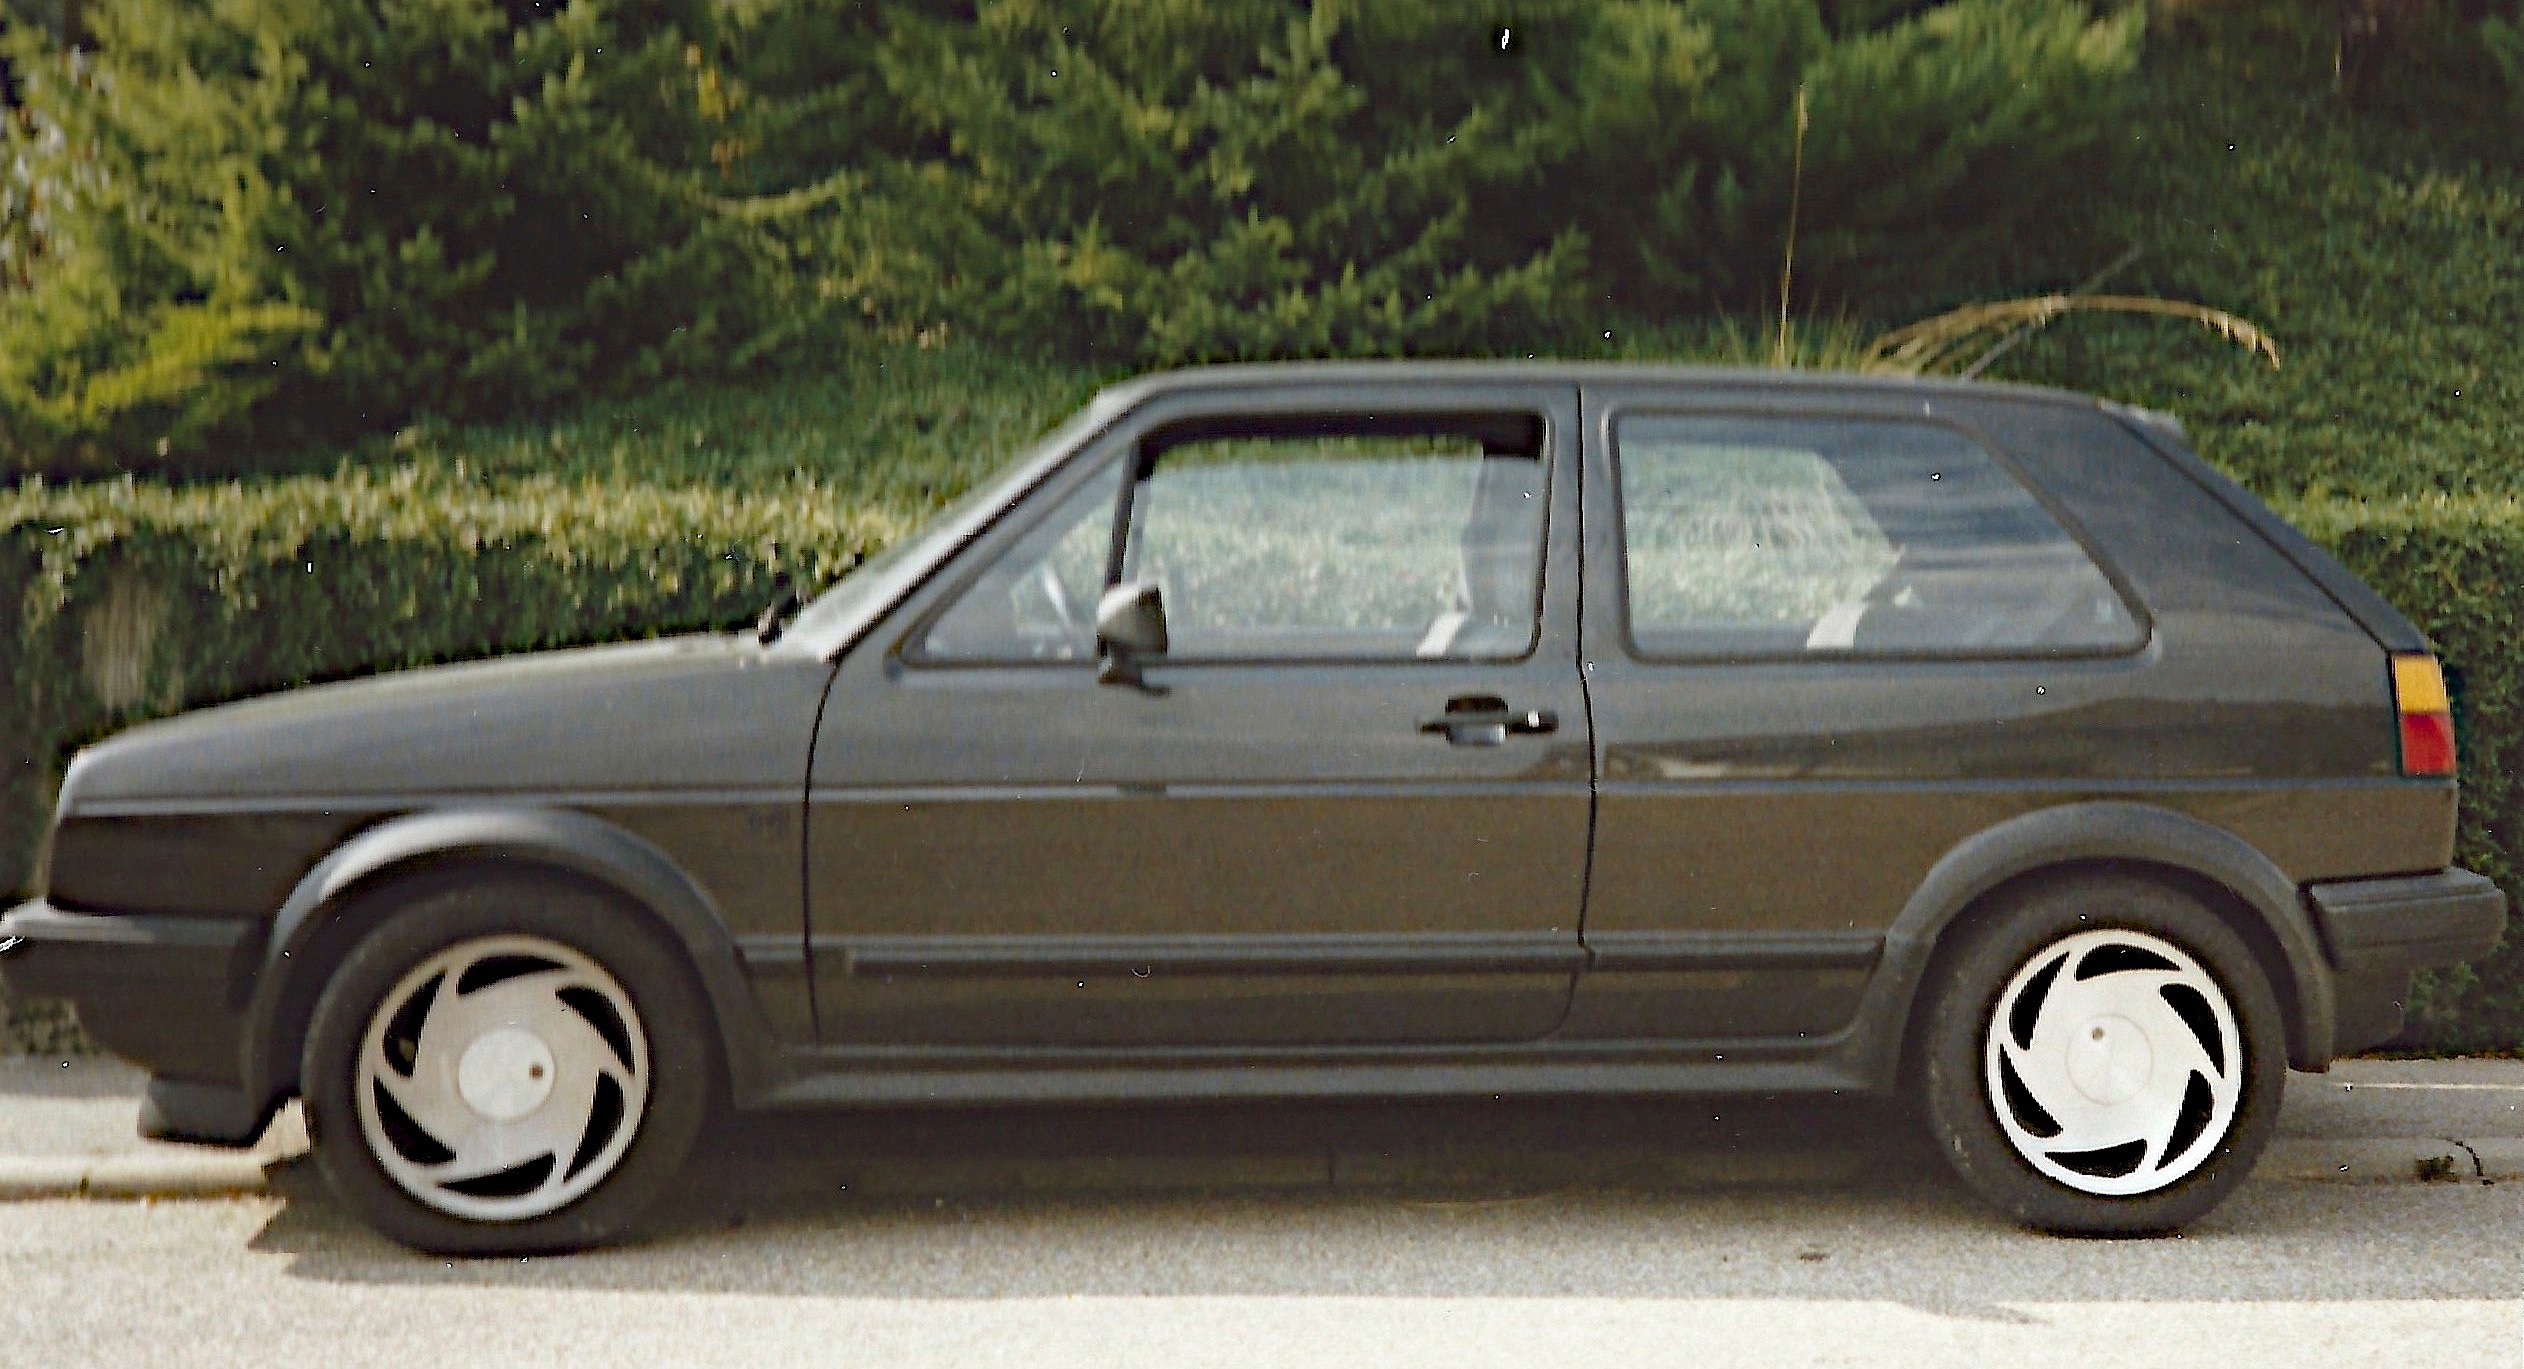 GTI geht immer: 1988er VW Golf 2 GTI mit vielen Neuteilen ins